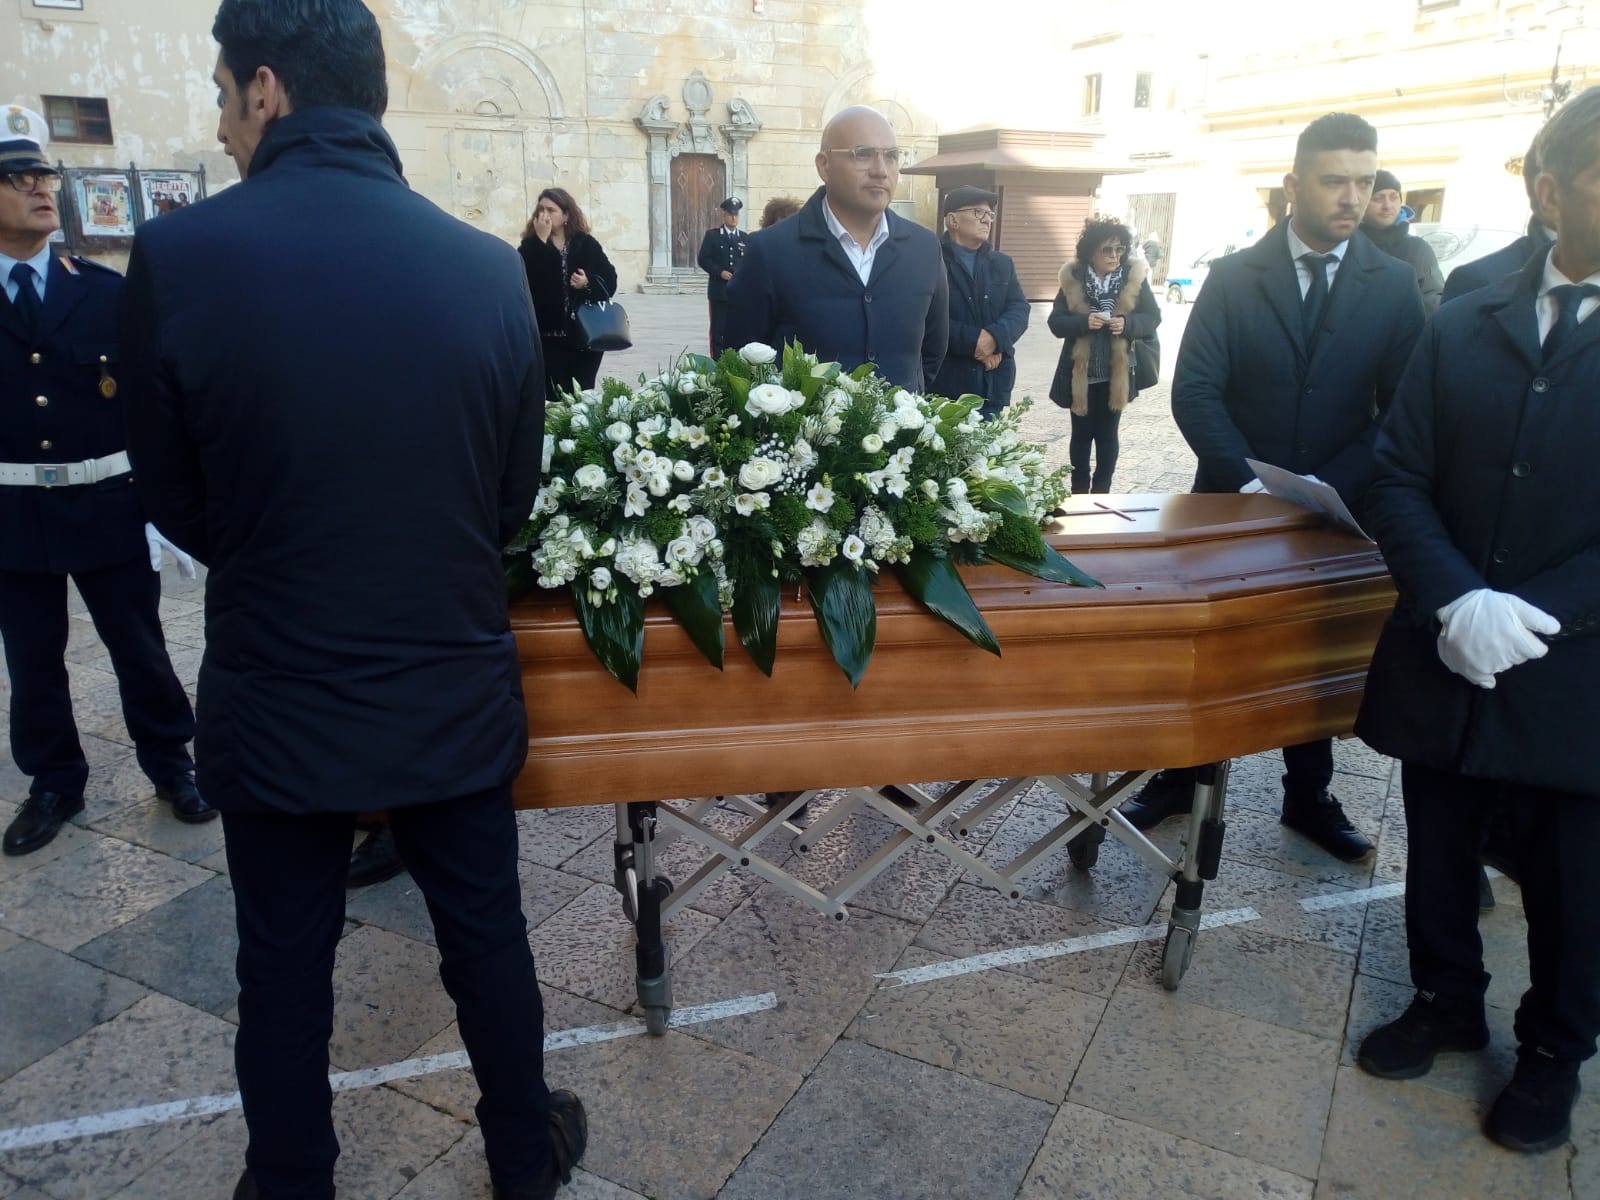 Si sono svolti i funerali di Salvatore Grillo